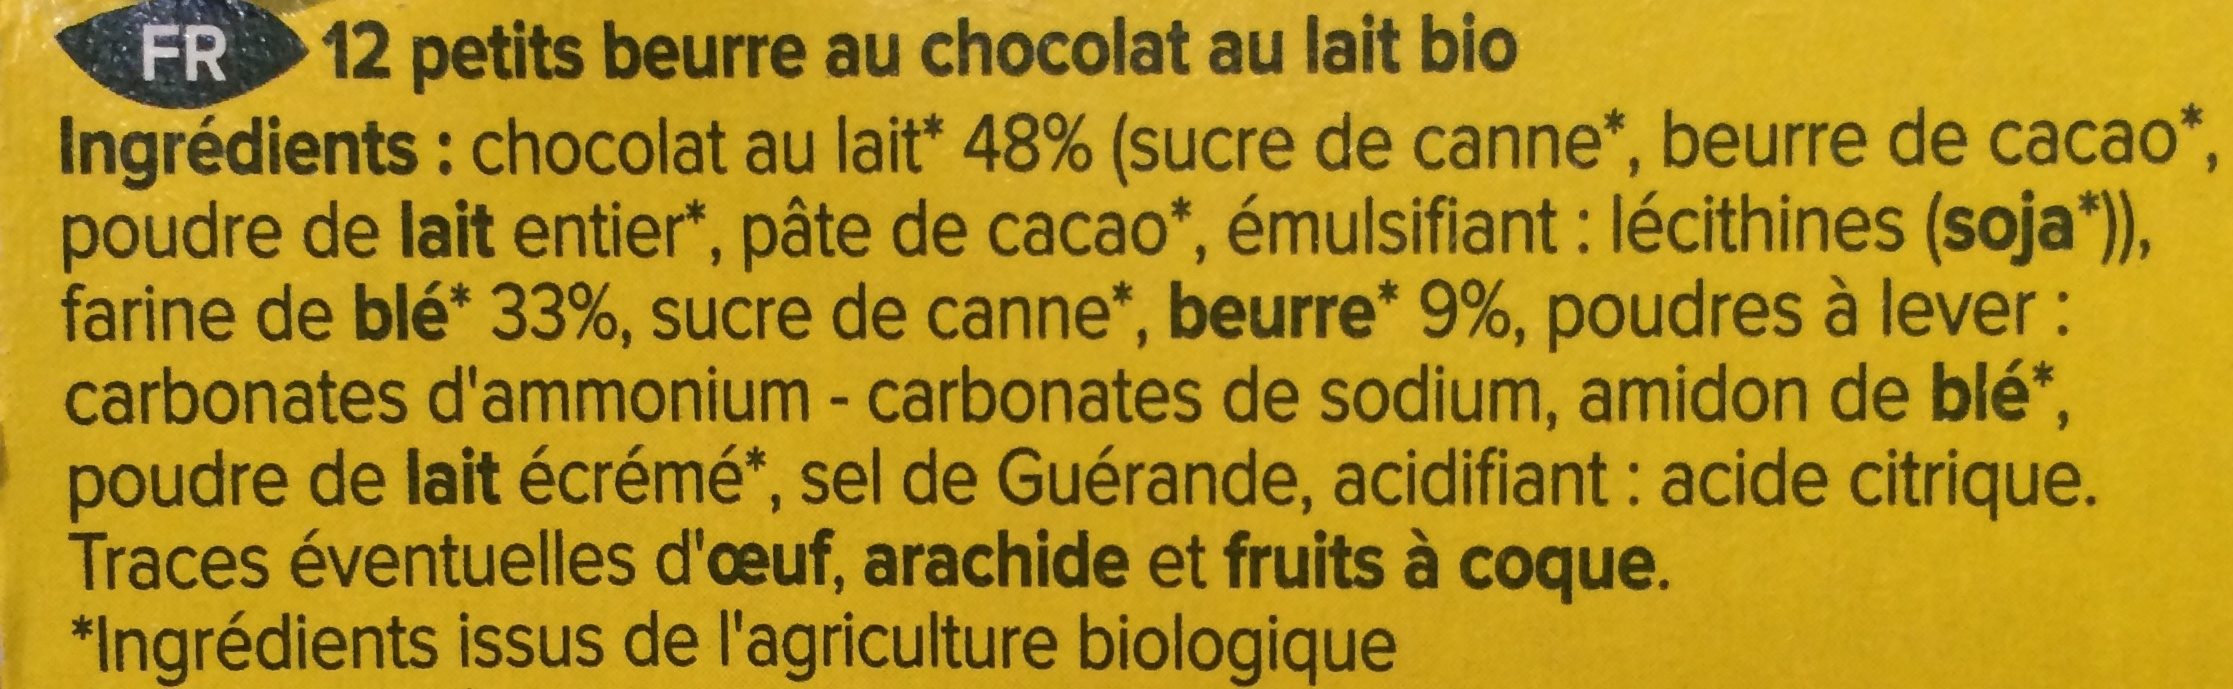 Petit beurre chocolat au lait bio - Ingrédients